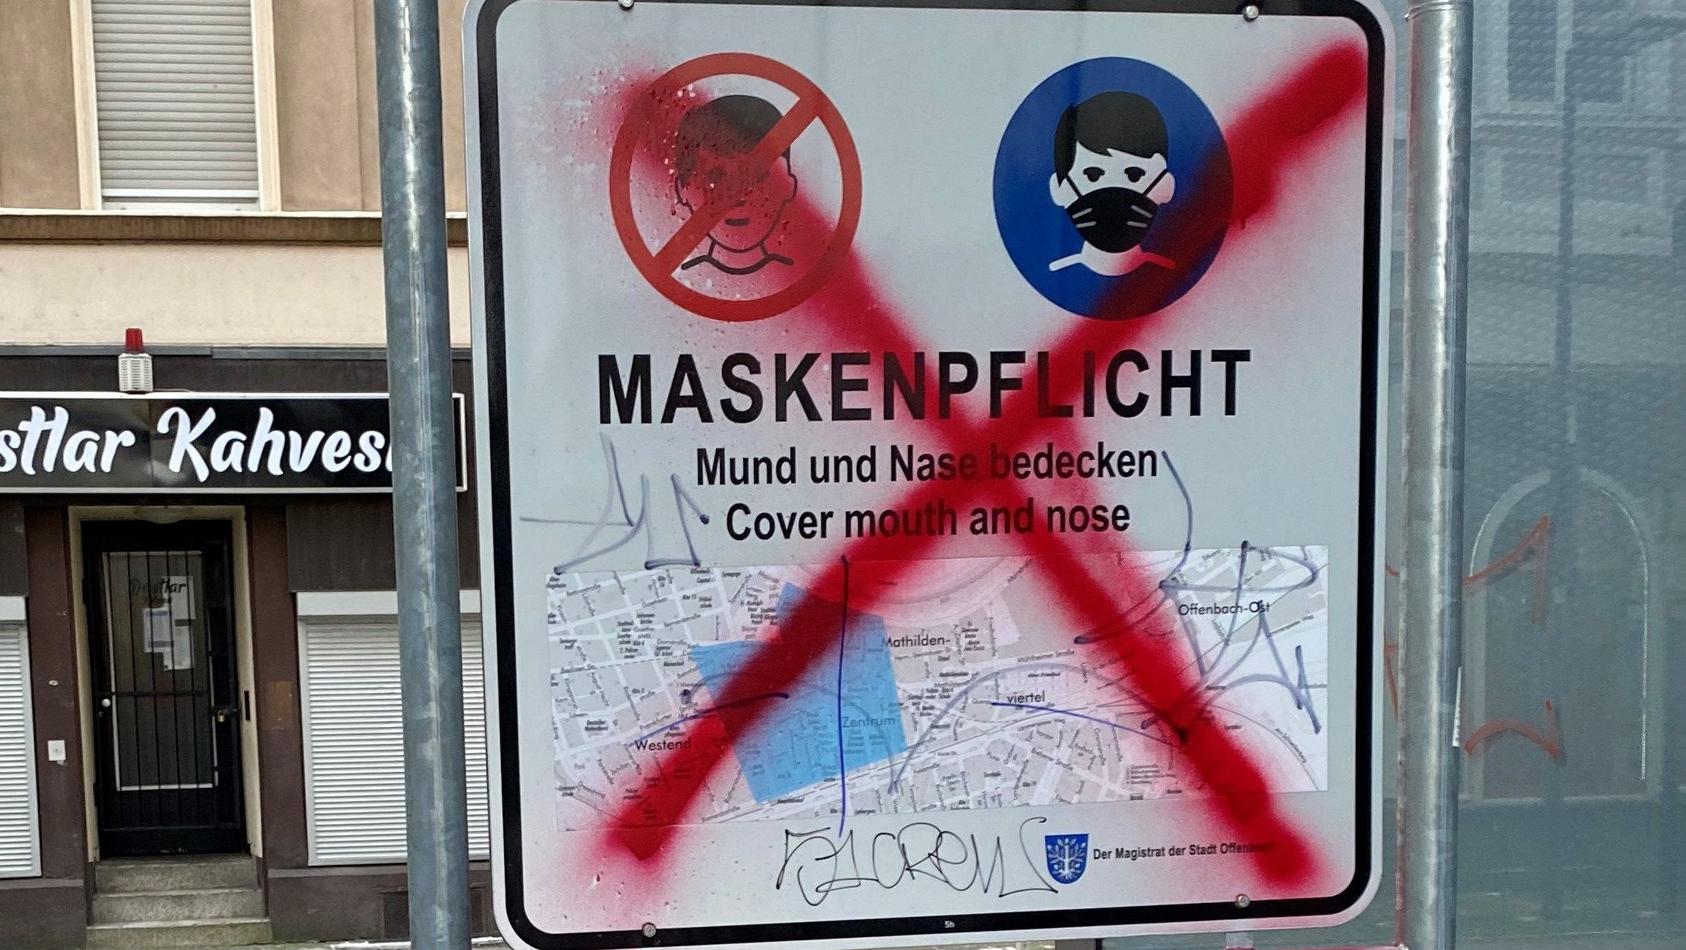 Unbekannte zerstören immer wieder die Masken-Hinweisschilder in Offenbach. Die Stadt hat eine Belohnung von bis zu 500 Euro ausgesetzt,